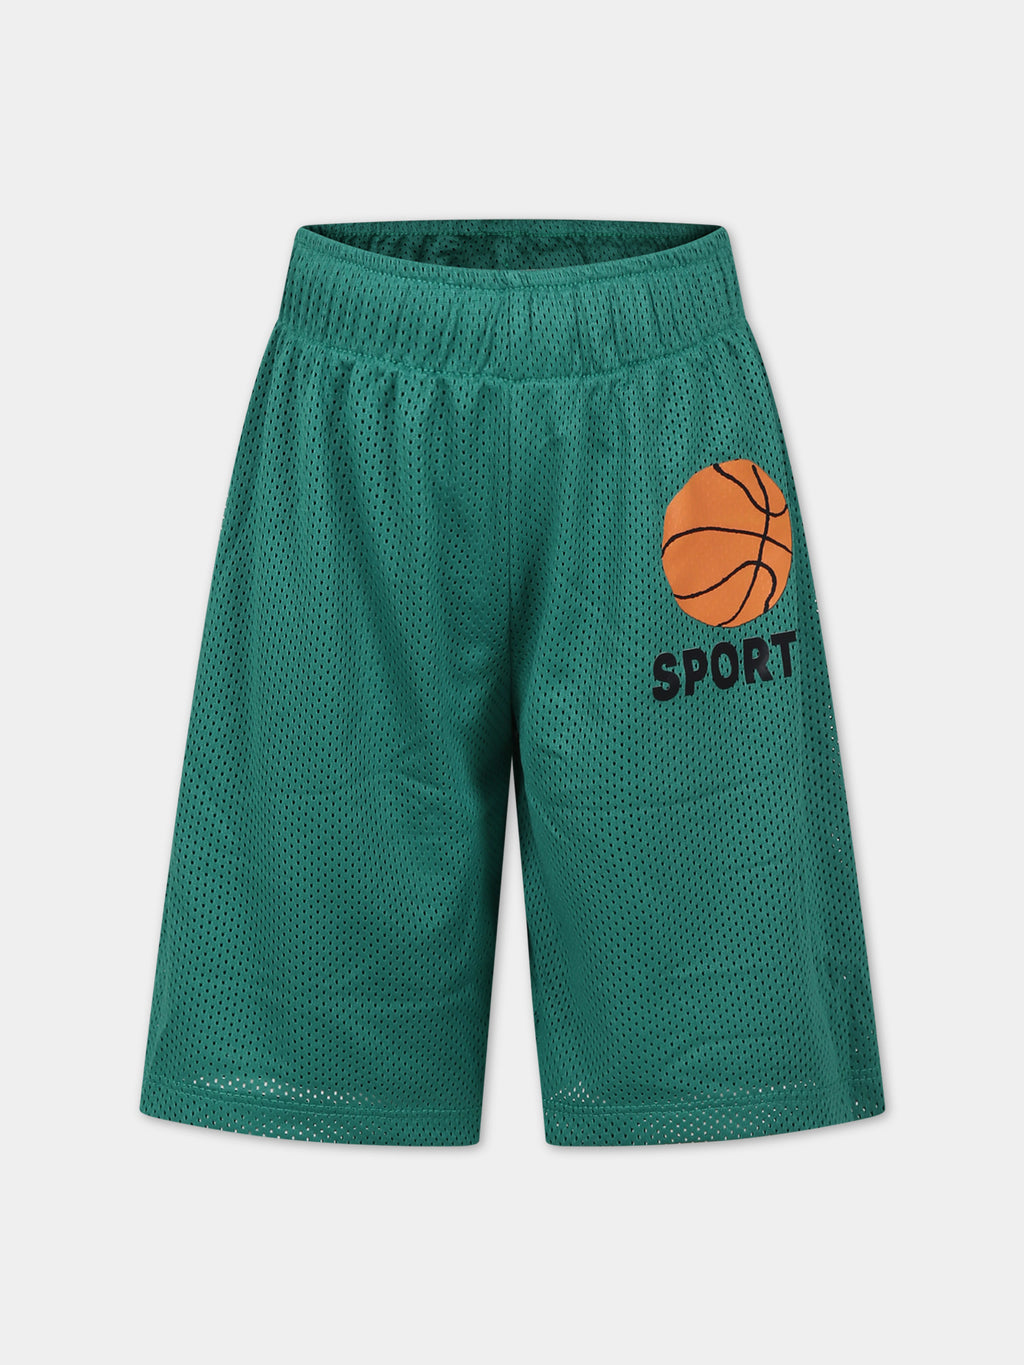 Short de sport vert pour enfants avec basket-ball